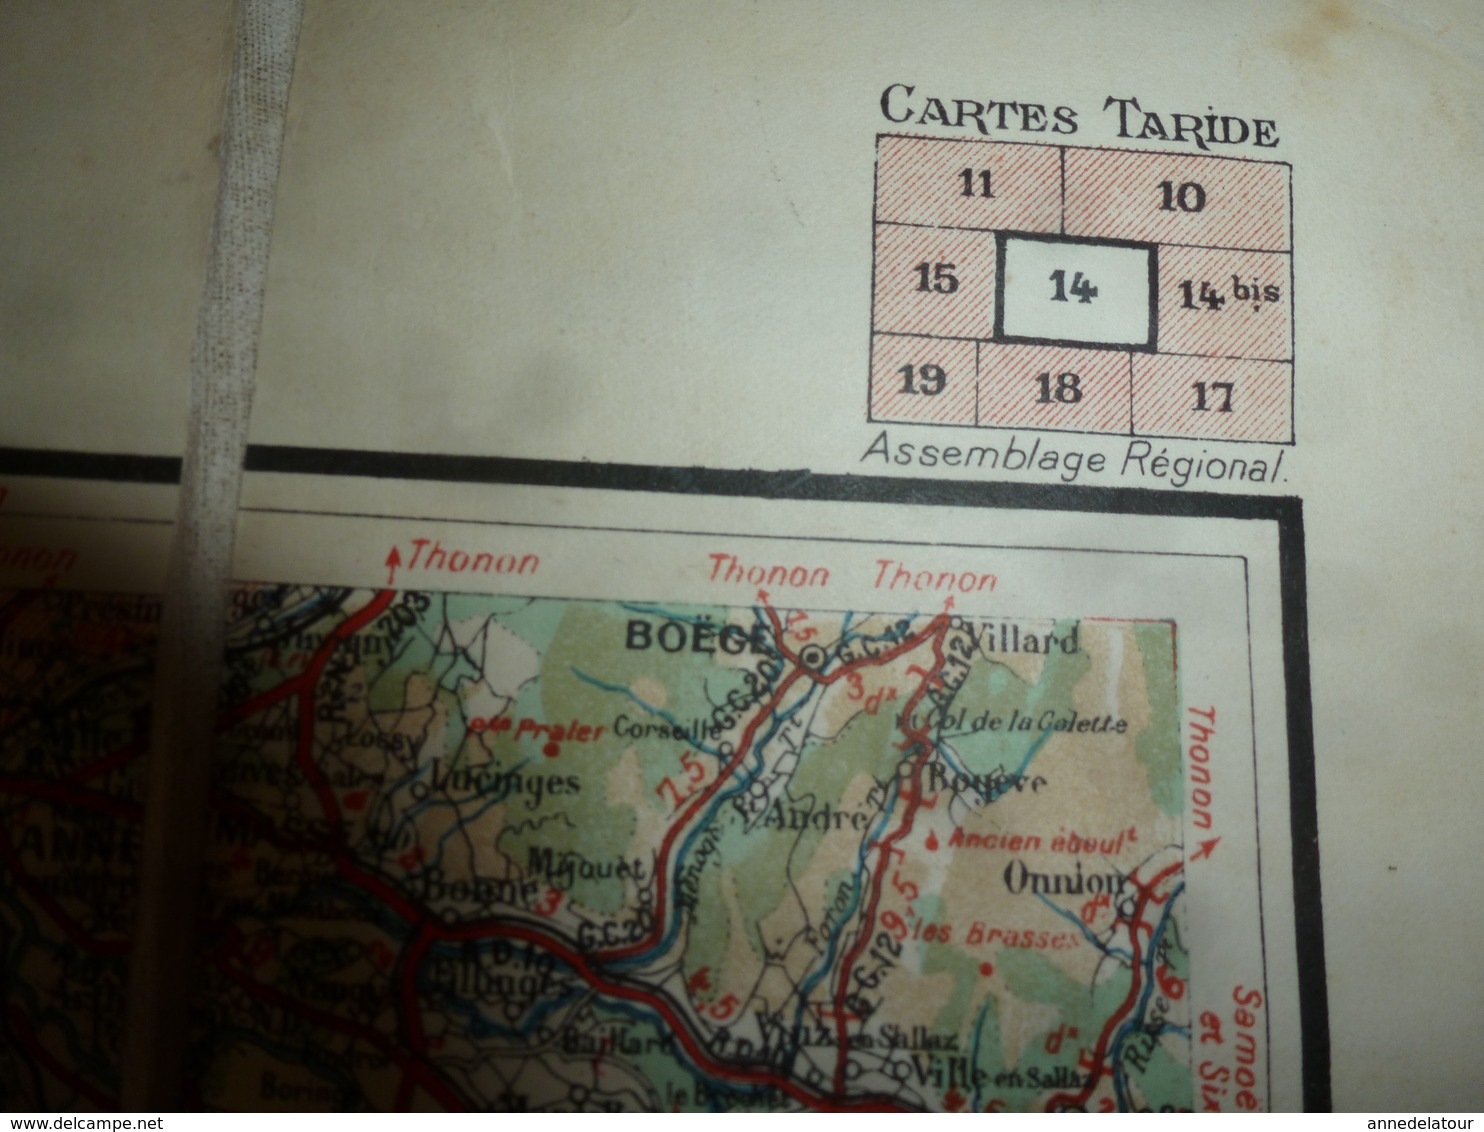 Carte routière toilée   TARIDE    N° 14  ---->  Lyonnais - Savoie - Dauphiné